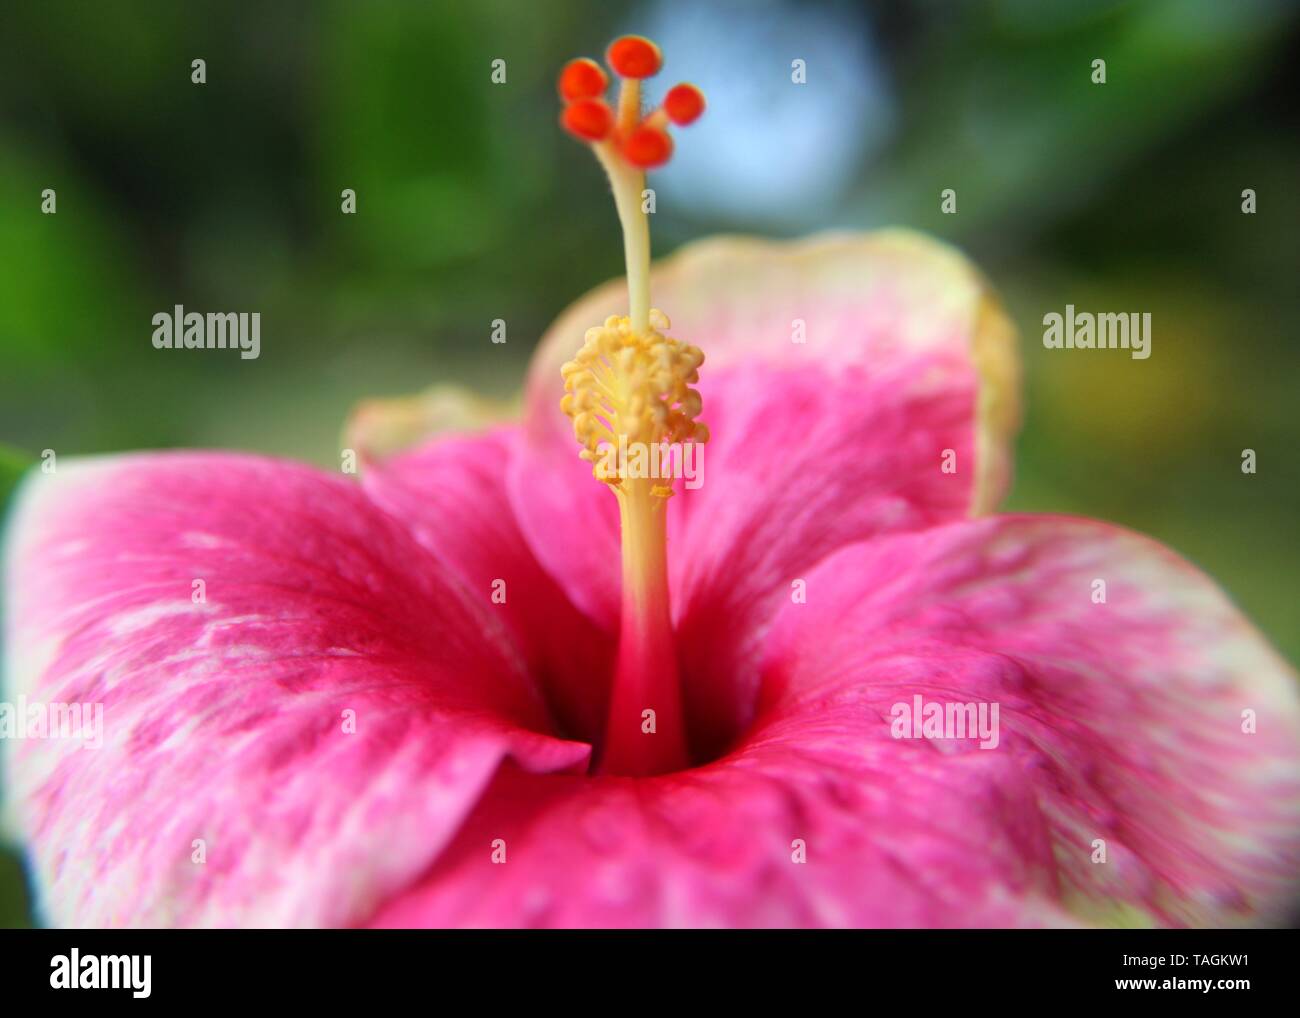 Makro - Nahaufnahme der schönen rosa Farbe Schuhblume - Rosenmalbe - Hibiskusblüte in einem Haus gesehen Garten in Sri Lanka Stockfoto